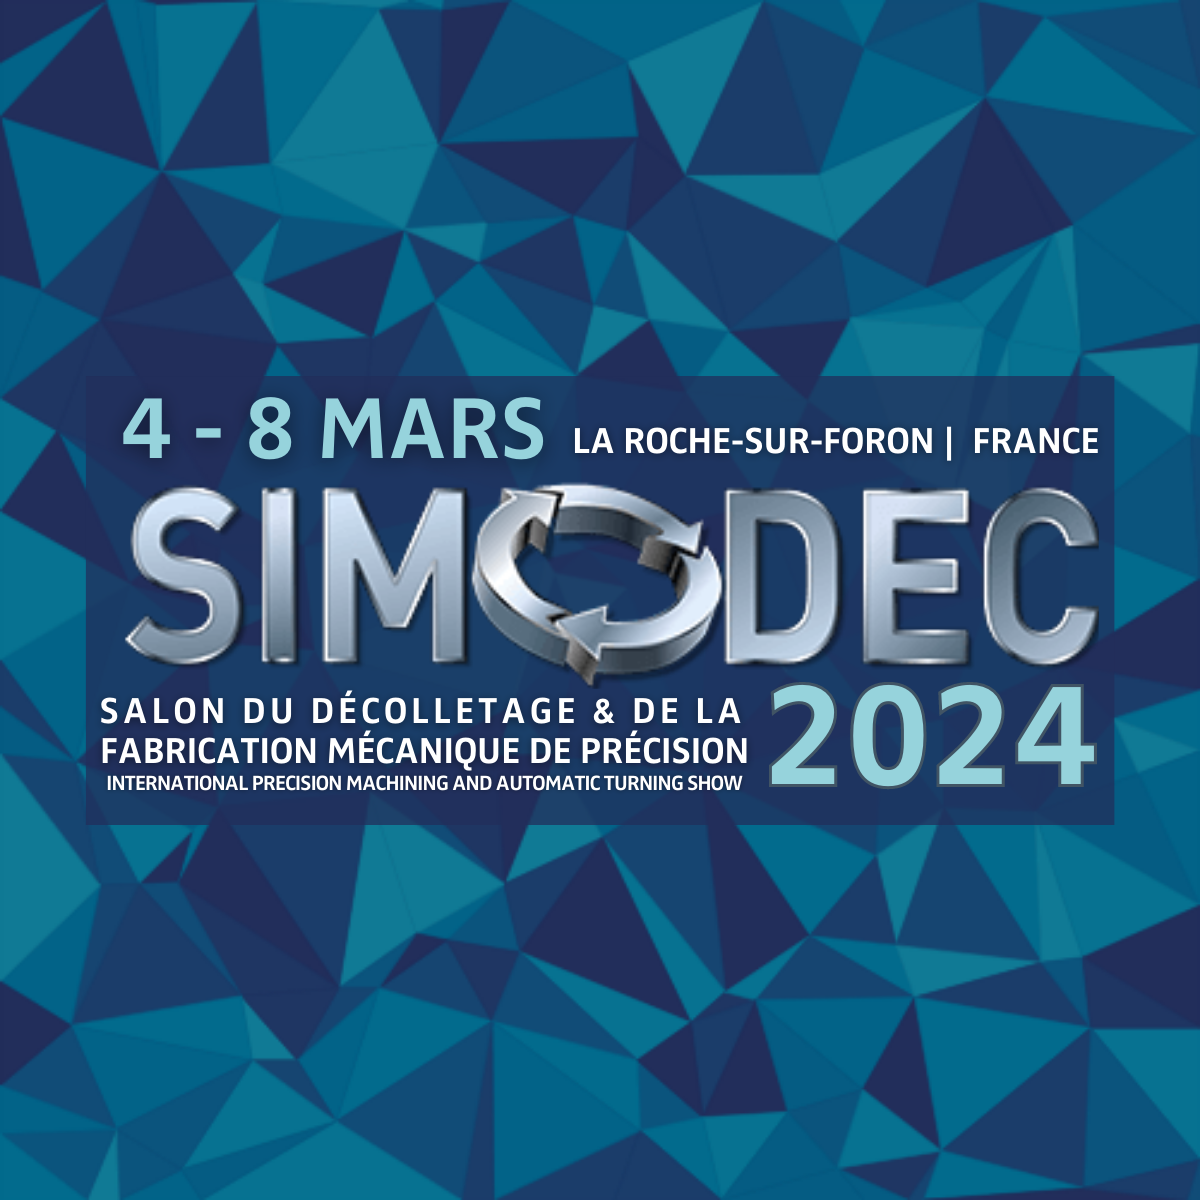 Simodec 2024 – Ontmoetingsplaats voor professionals in de fijnmechanische industrie.